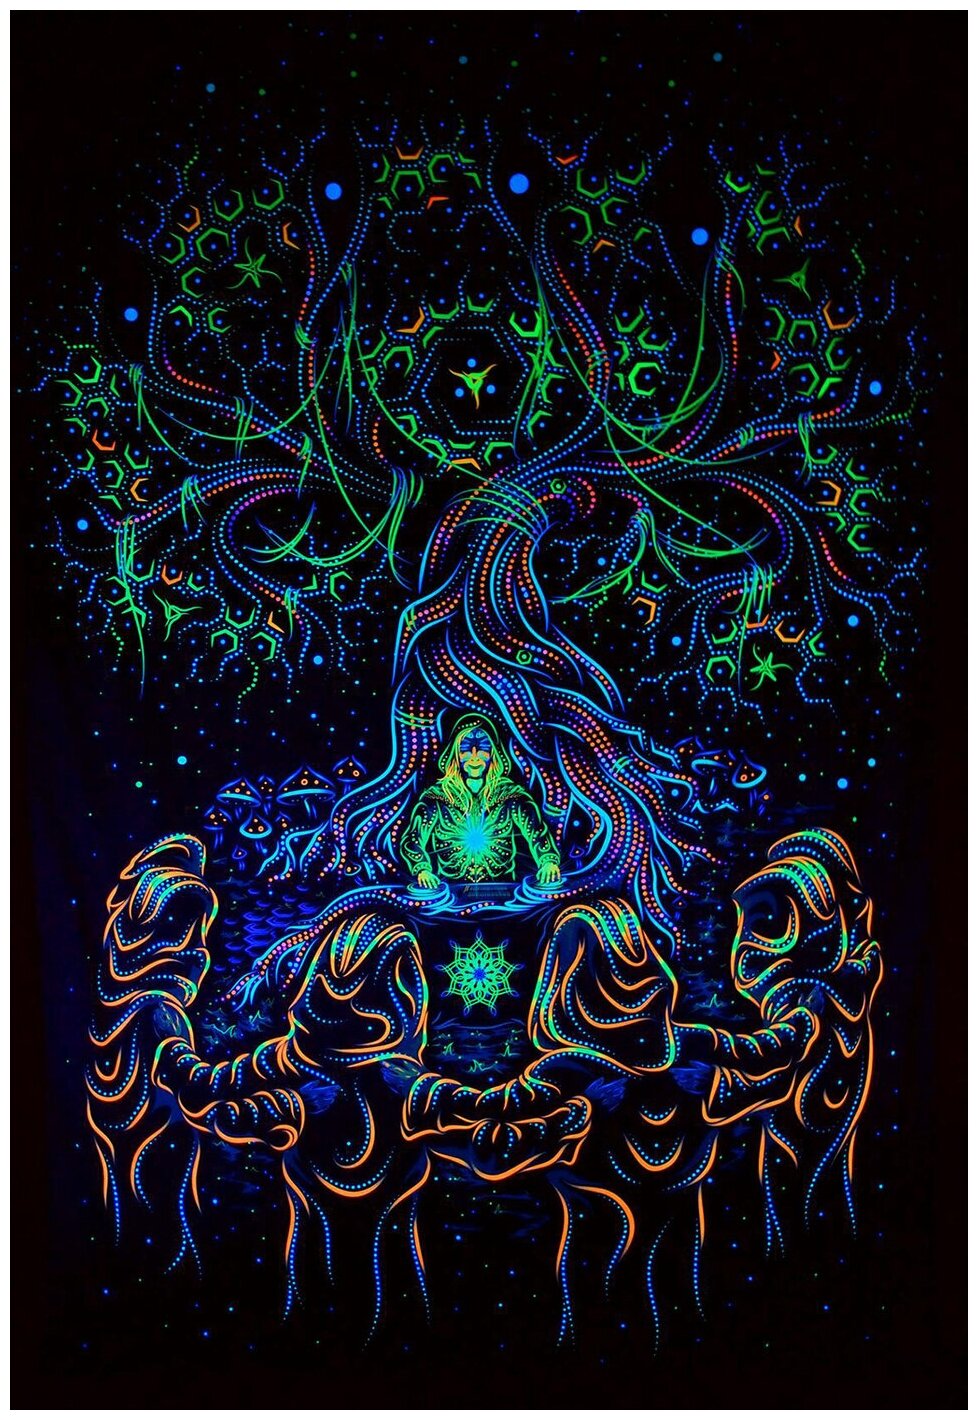 Светящееся психоделическое полотно "Endless Glade", 50x75 см. Тканевый постер, светится в ультрафиолете, настенный декор в стиле вечеринки гоа-транс.